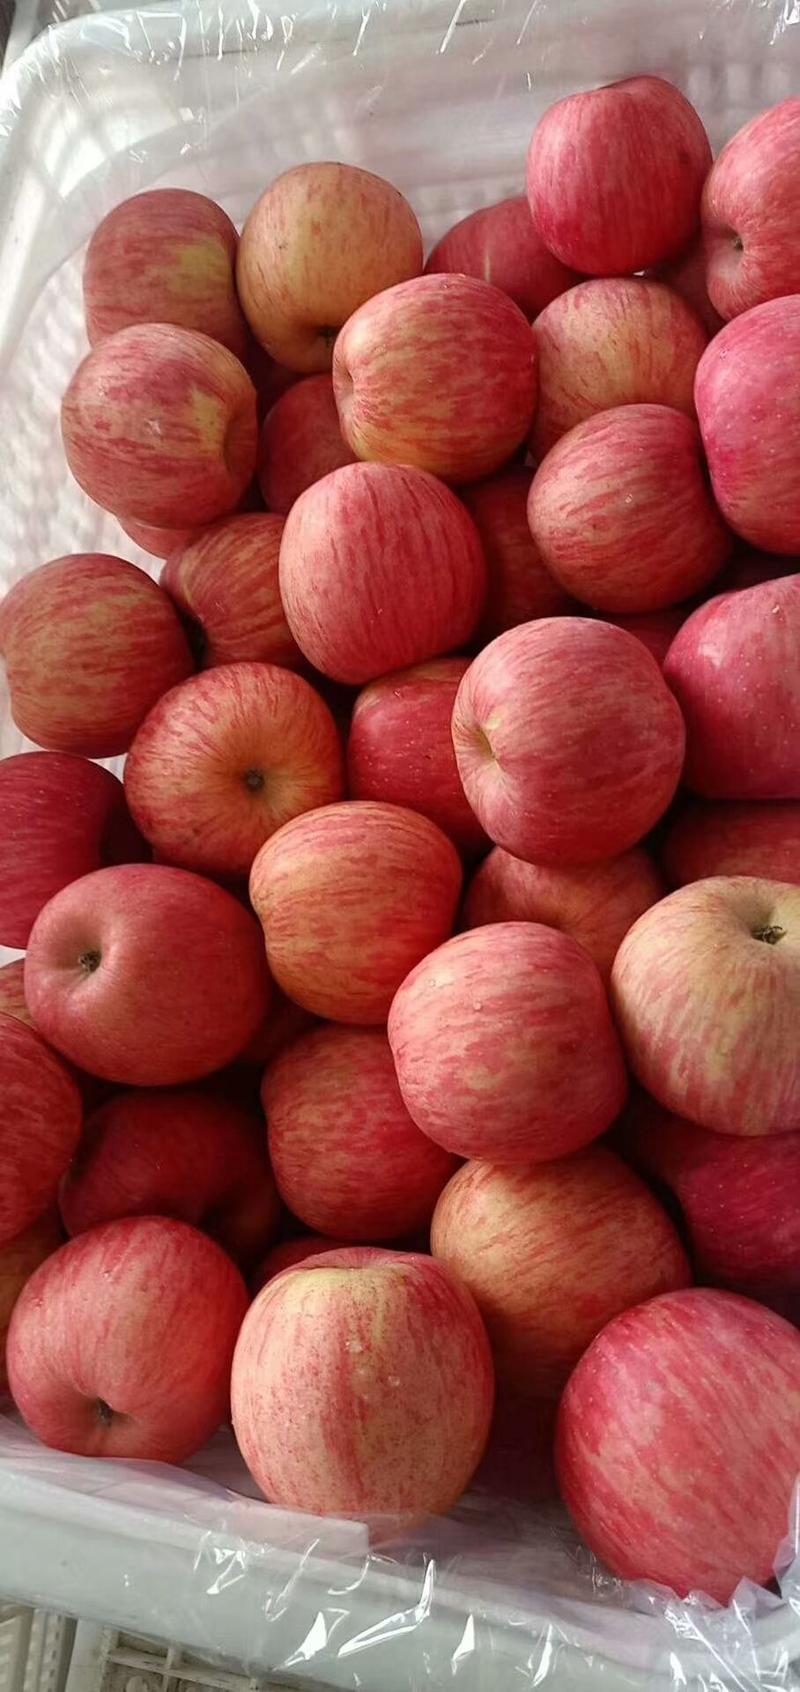 山东优质红富士苹果产地批发保质保量一手货源口感脆甜